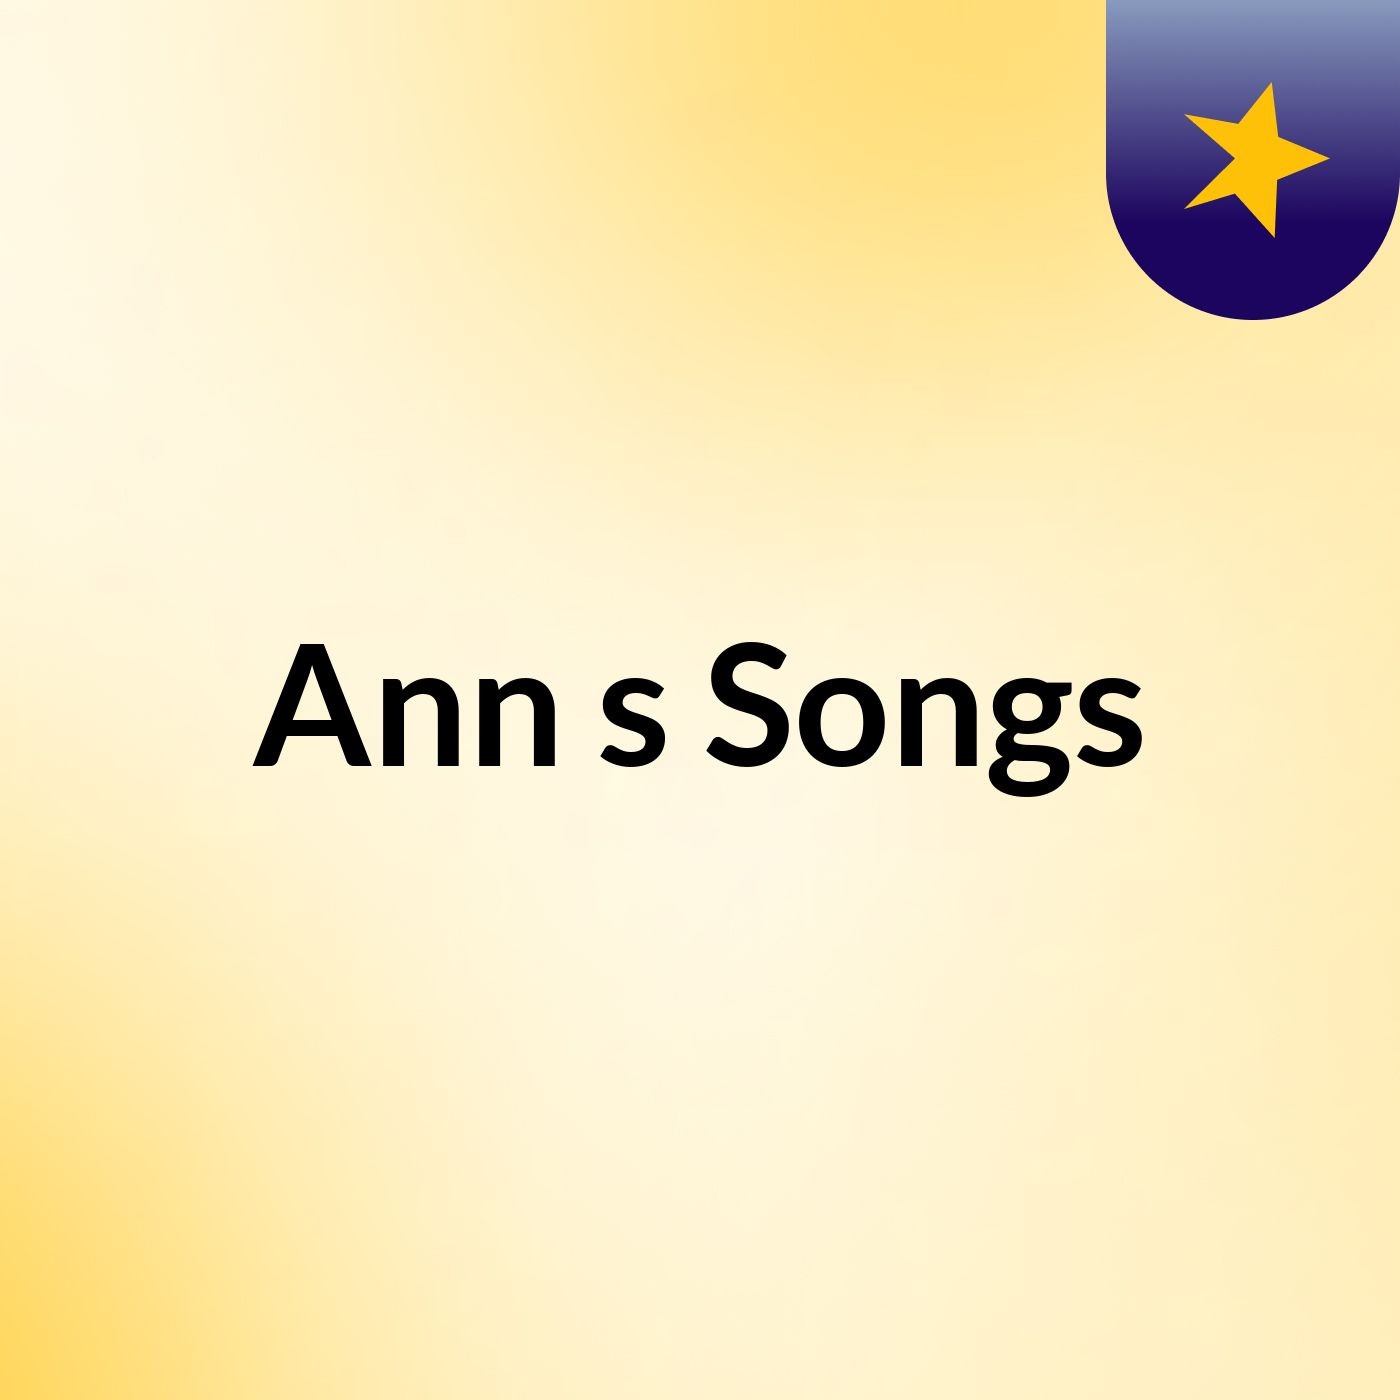 Ann's Songs